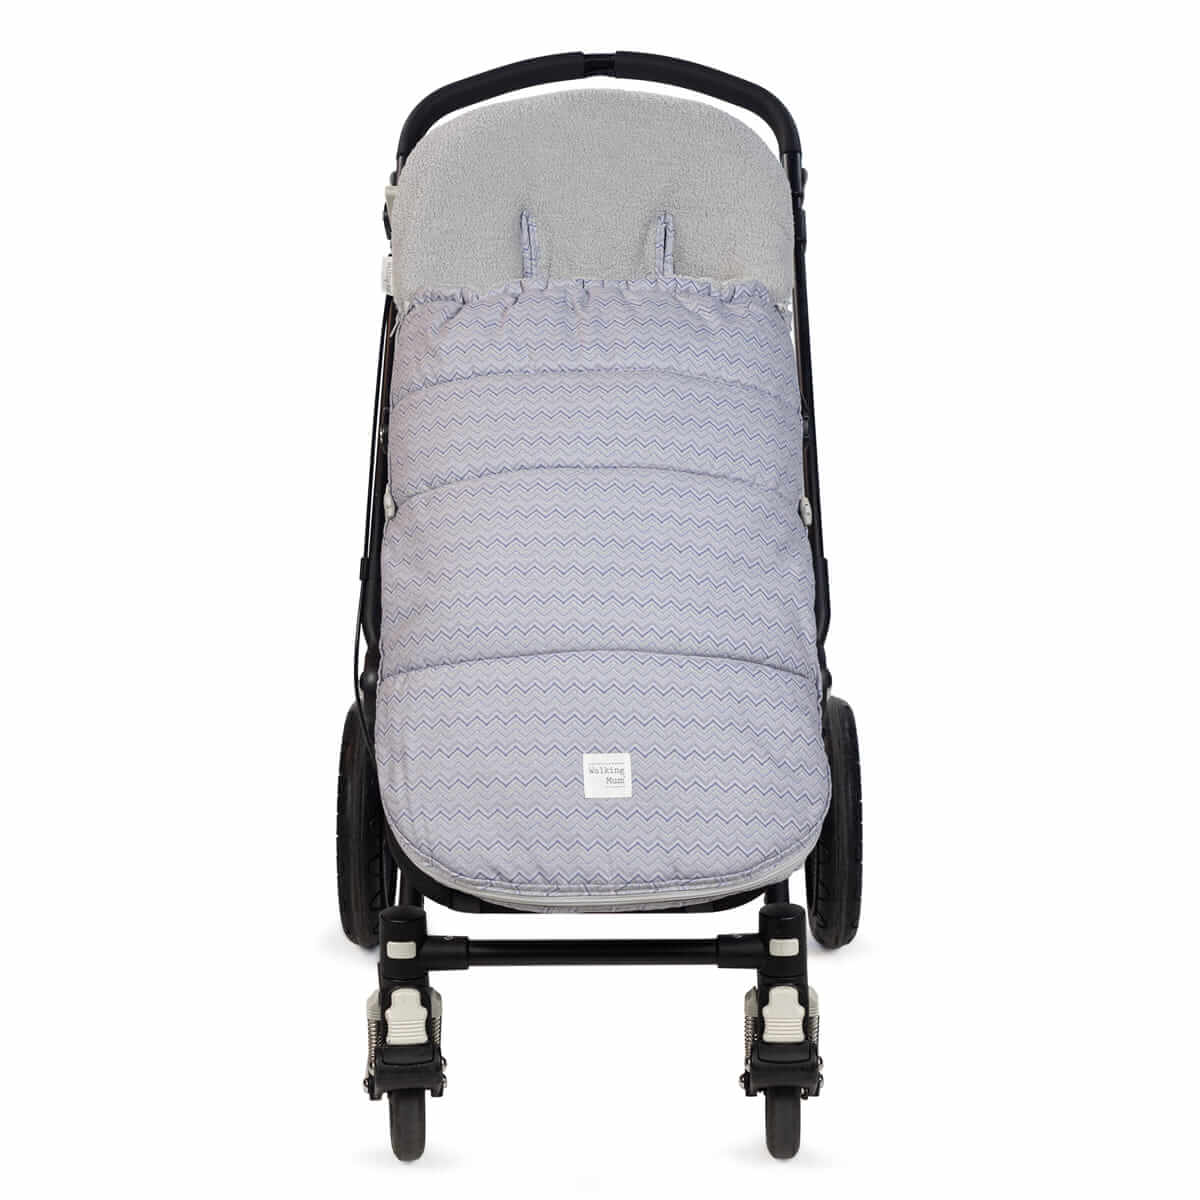 Saco silla paseo universal 80x87 cm - Saco capazo bebe universal algodón saco  carro bebe invierno Minky Caramelo safari - La Tienda de los Bebés 👶